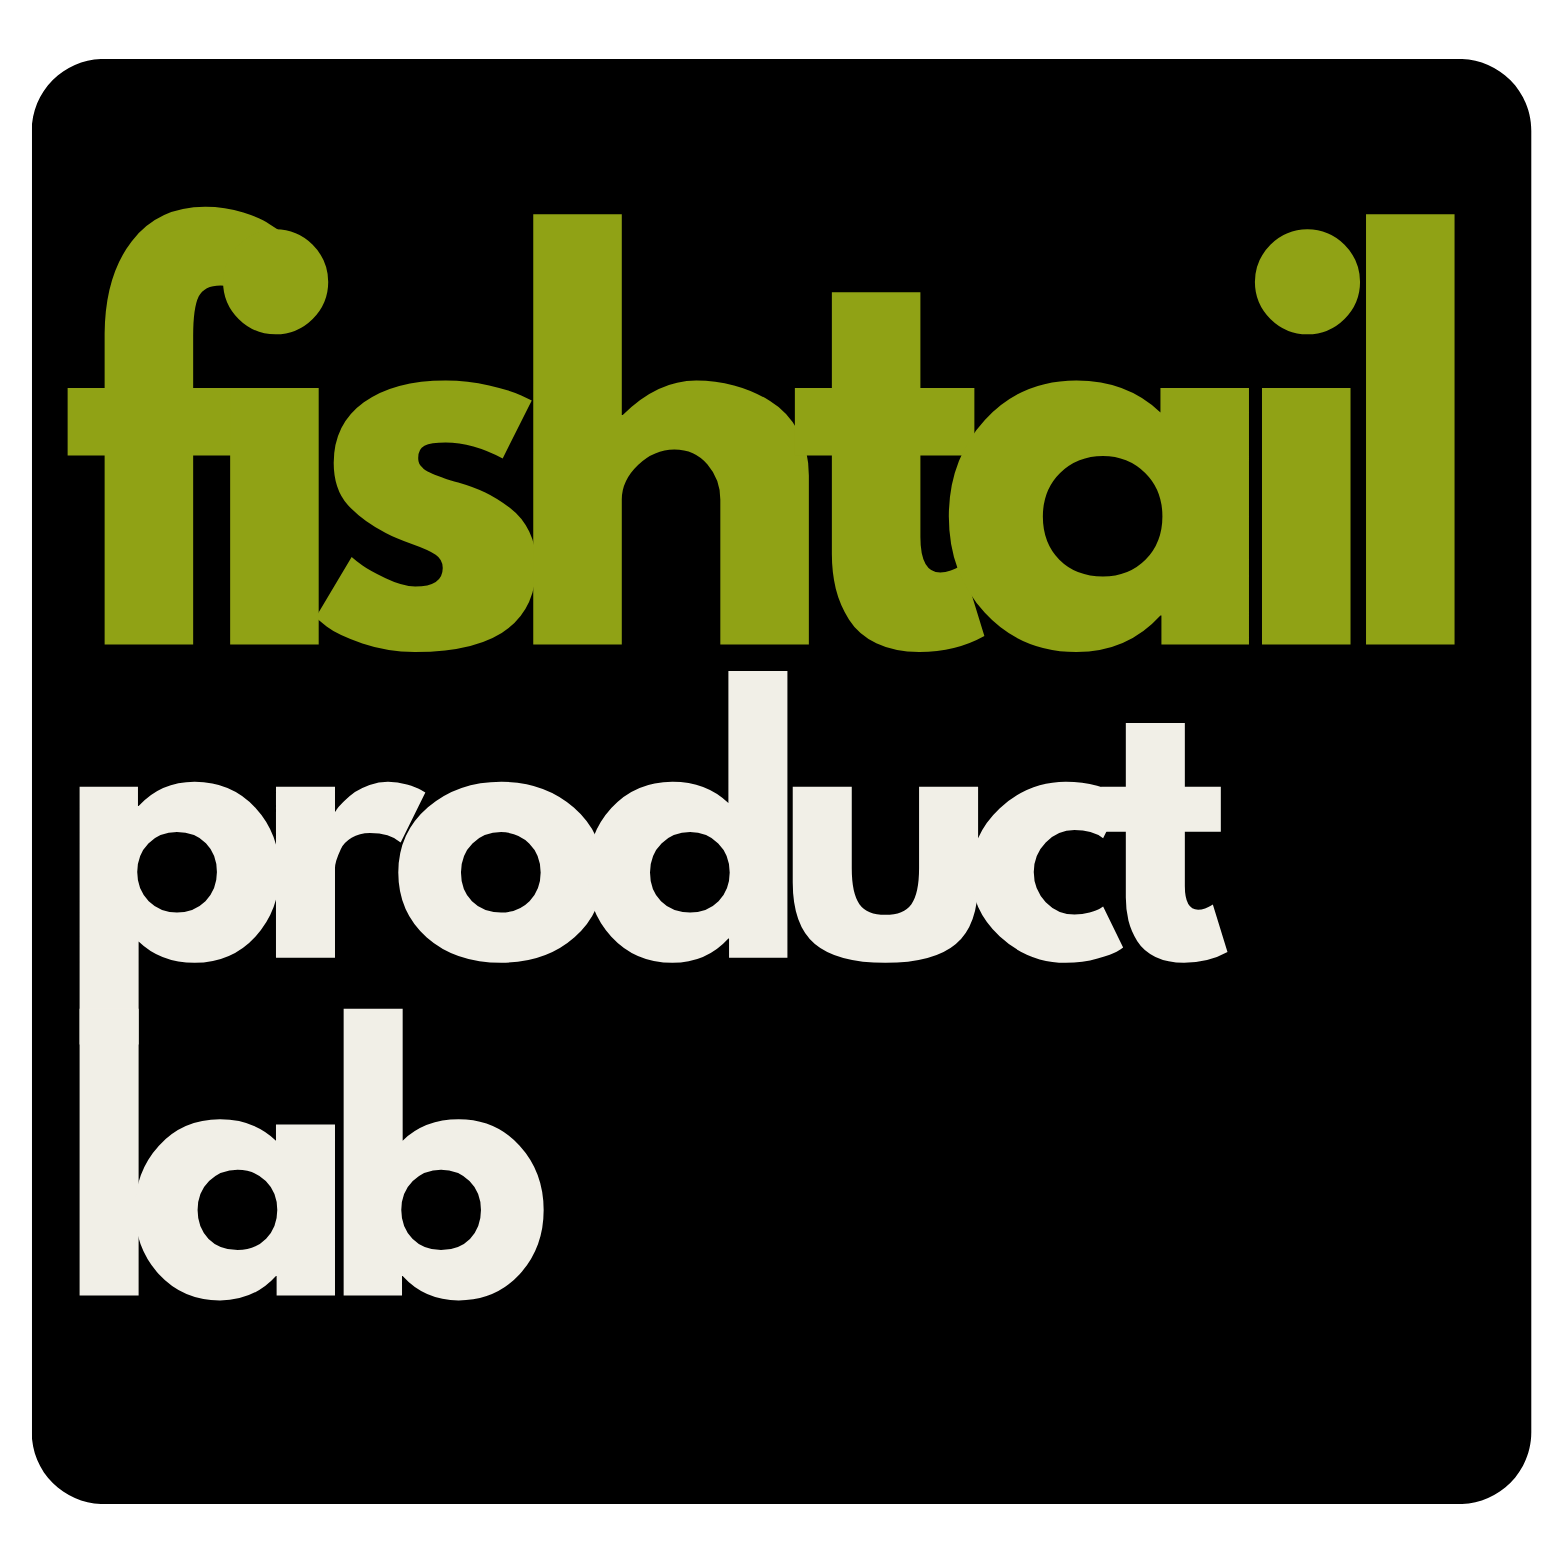 Fishtail tech logo (4)